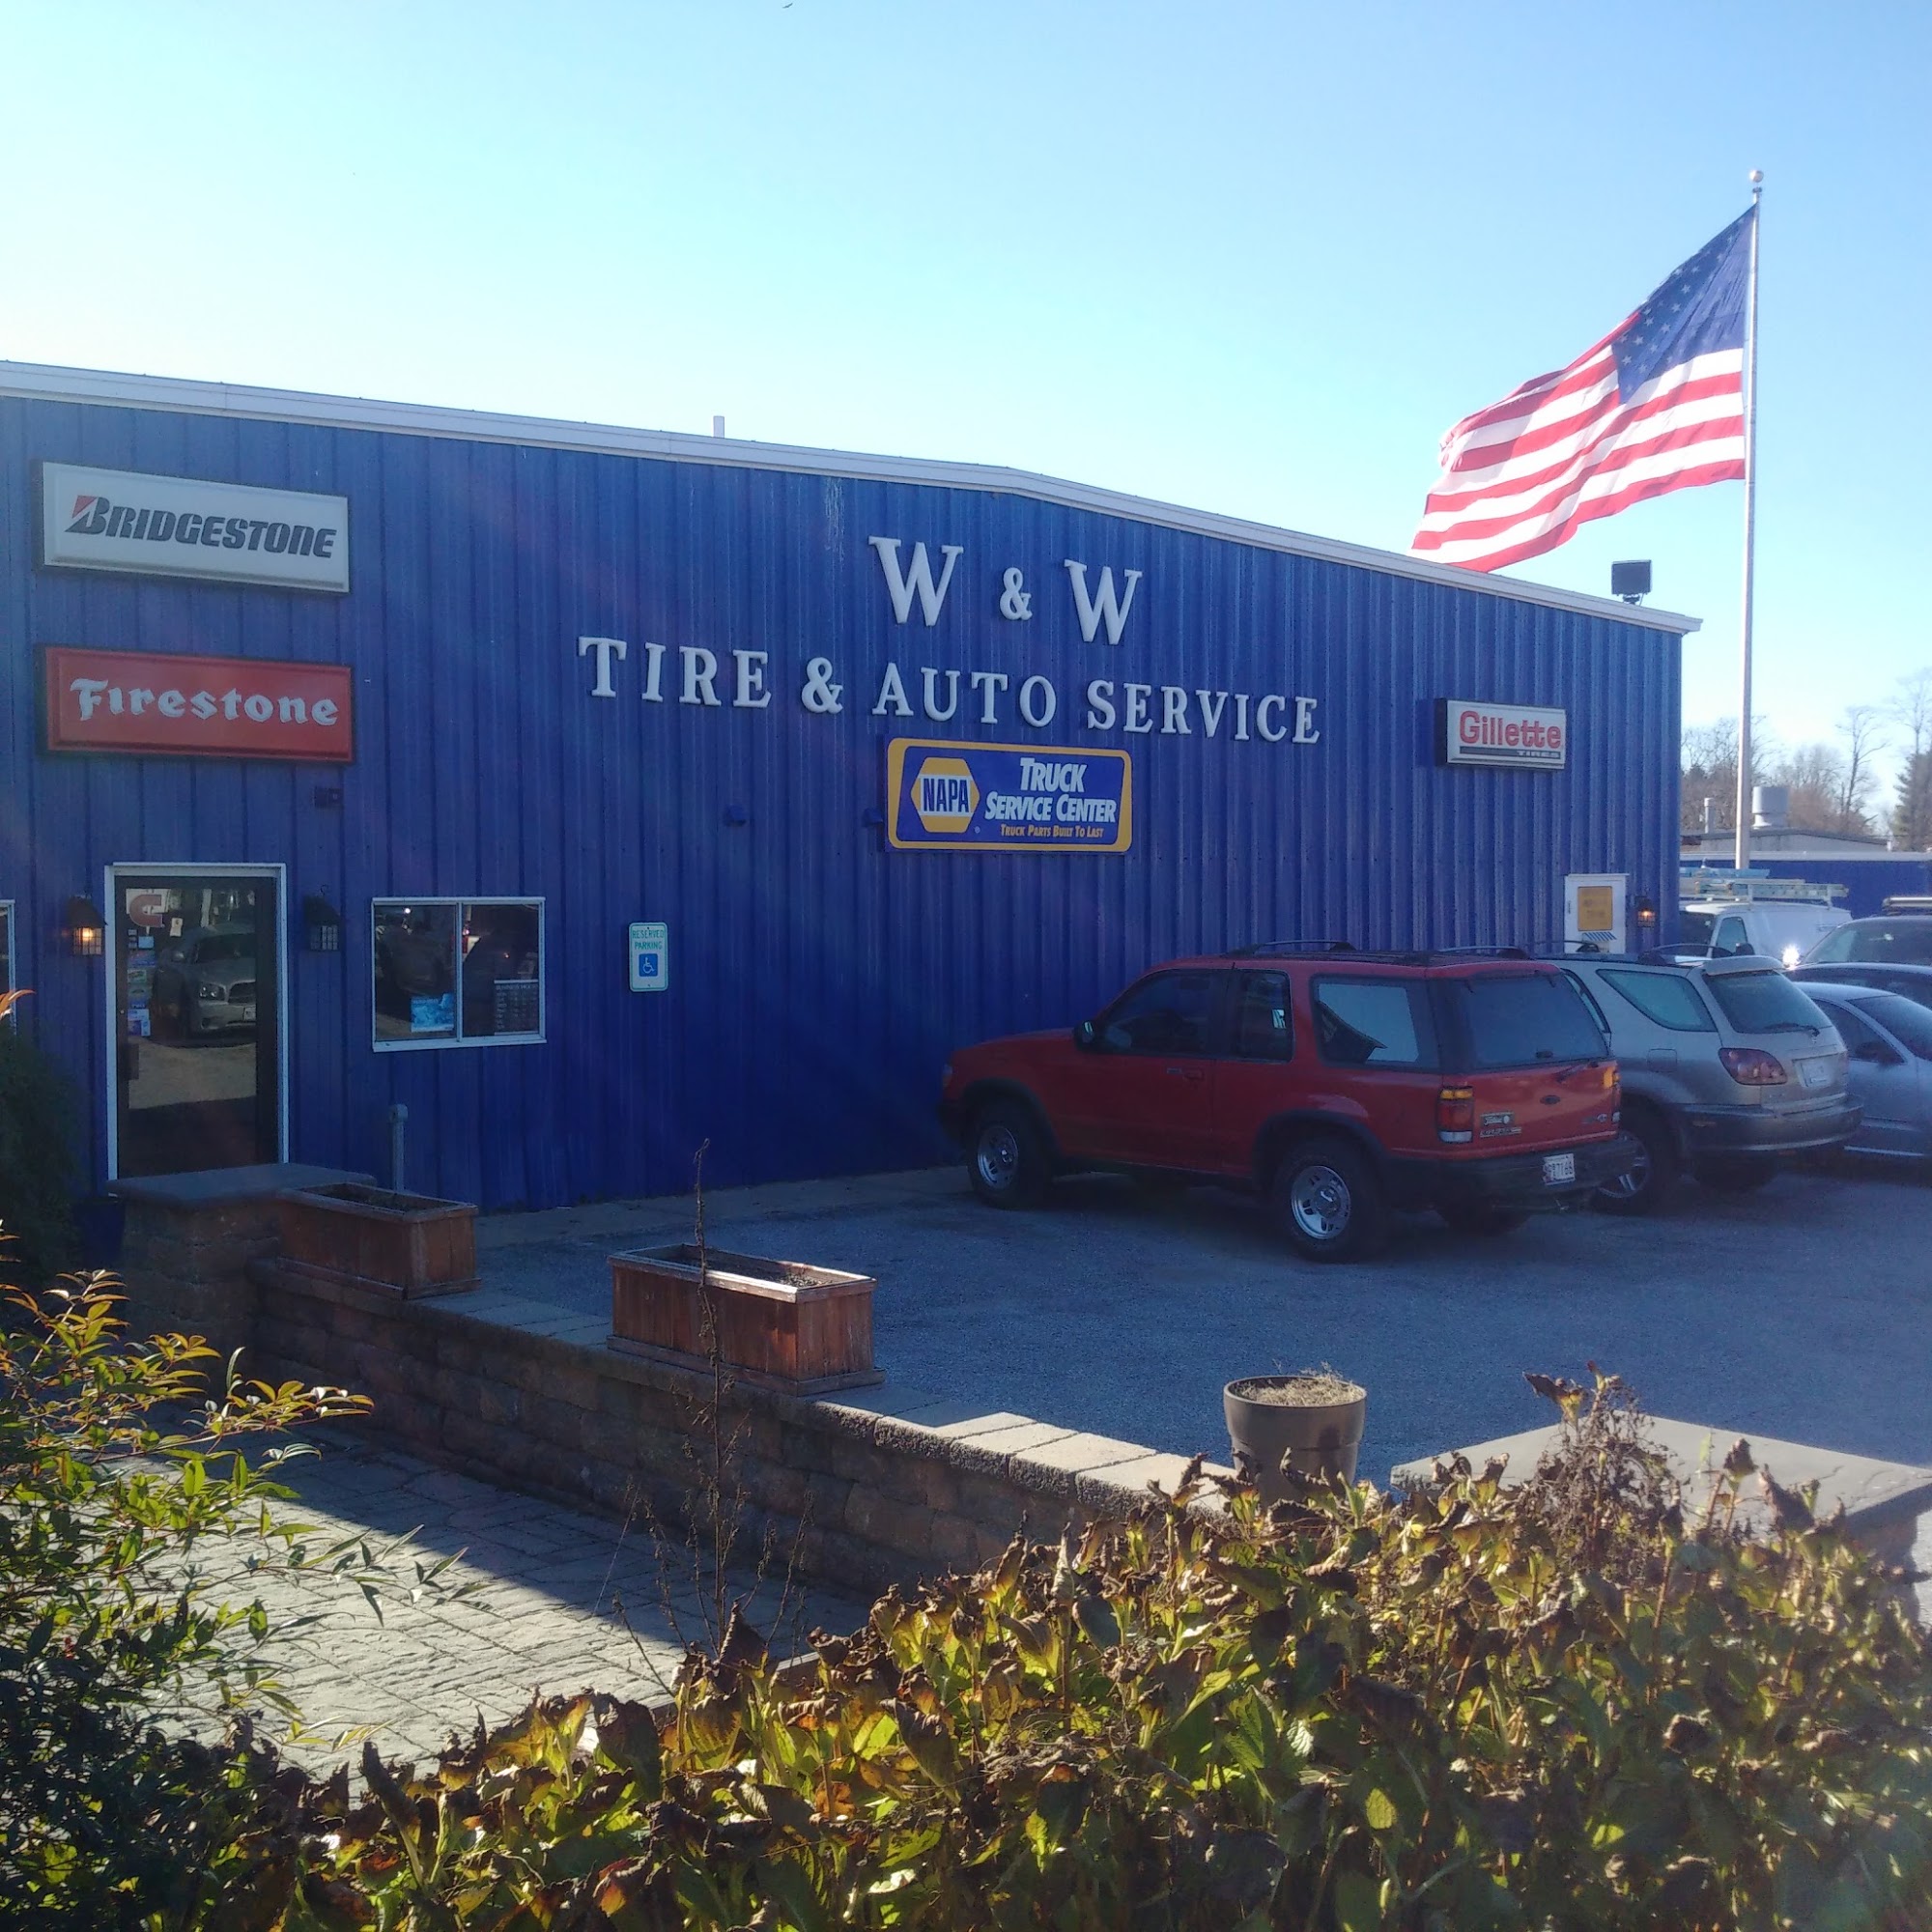 W & W Tire & Auto Services